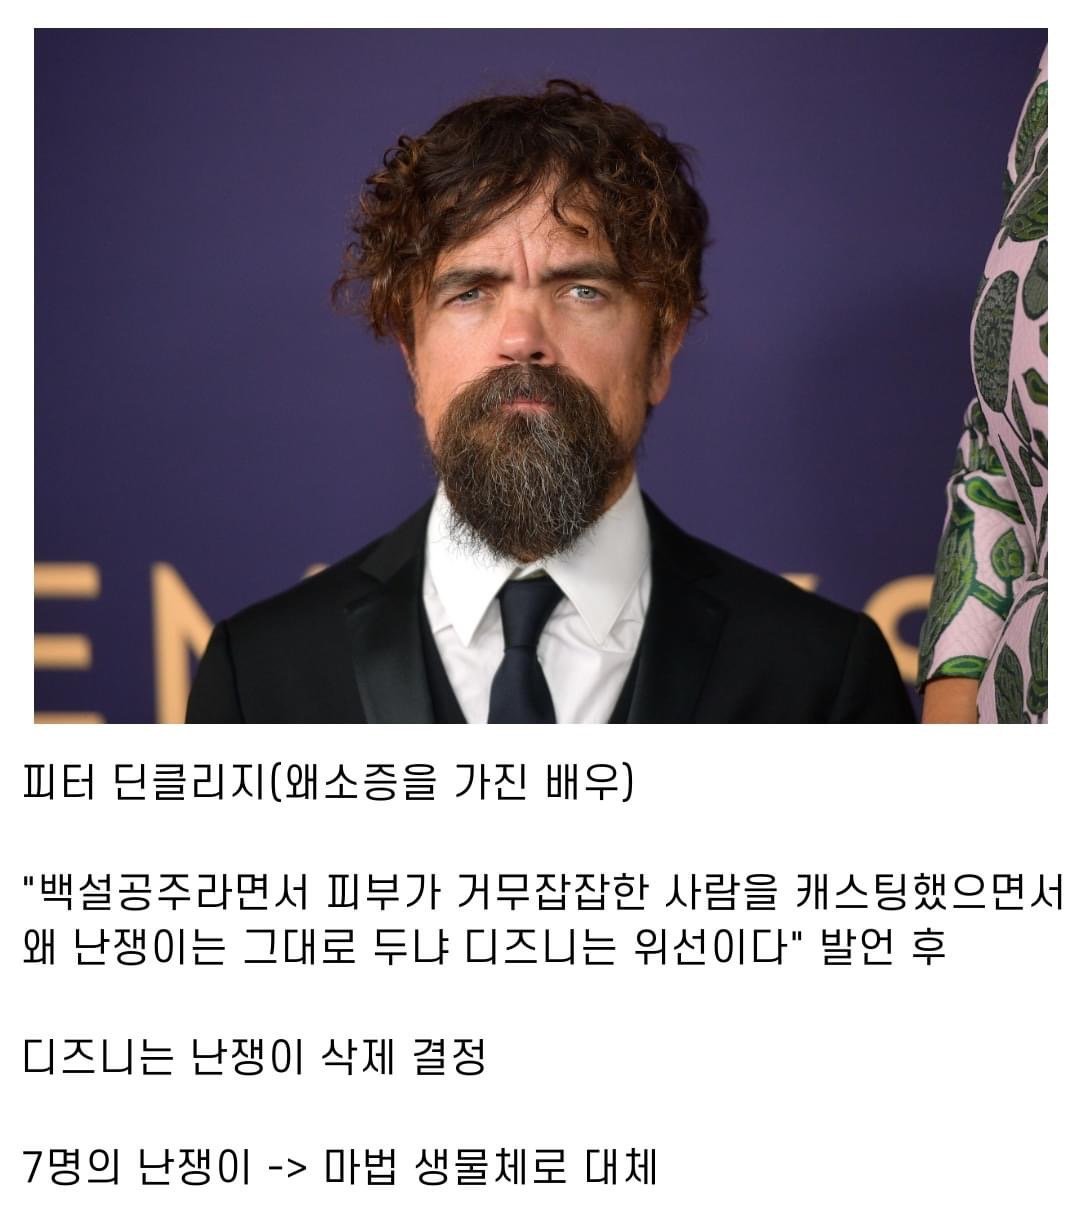 디즈니 영화 백설공주 실사화 근황 feat.진짜 ㅈ됬음